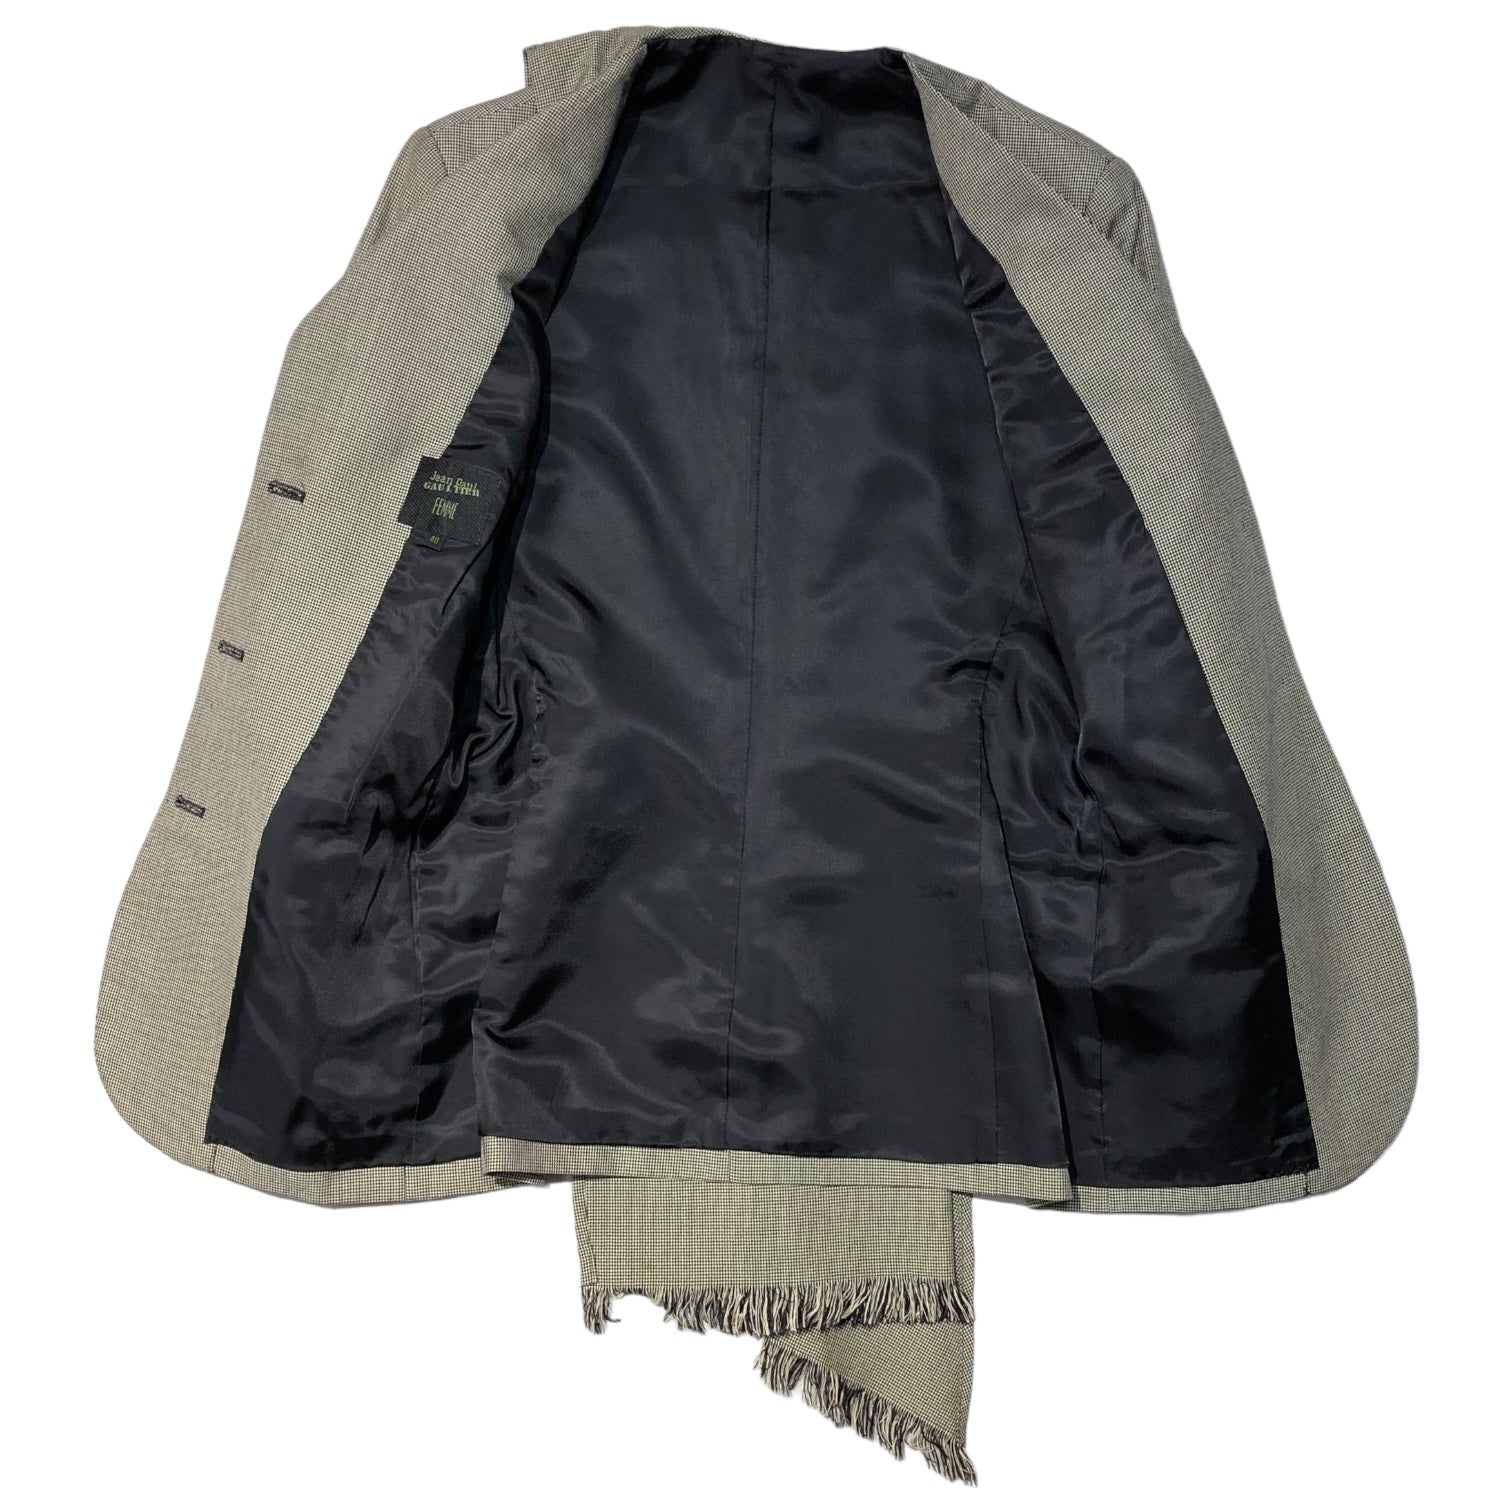 Jean Paul GAULTIER FEMME(ジャンポールゴルチエファム) 90's  3B stole design jacket 3B ストール デザイン ジャケット 40(L程度) グレー テーラード アーカイブ